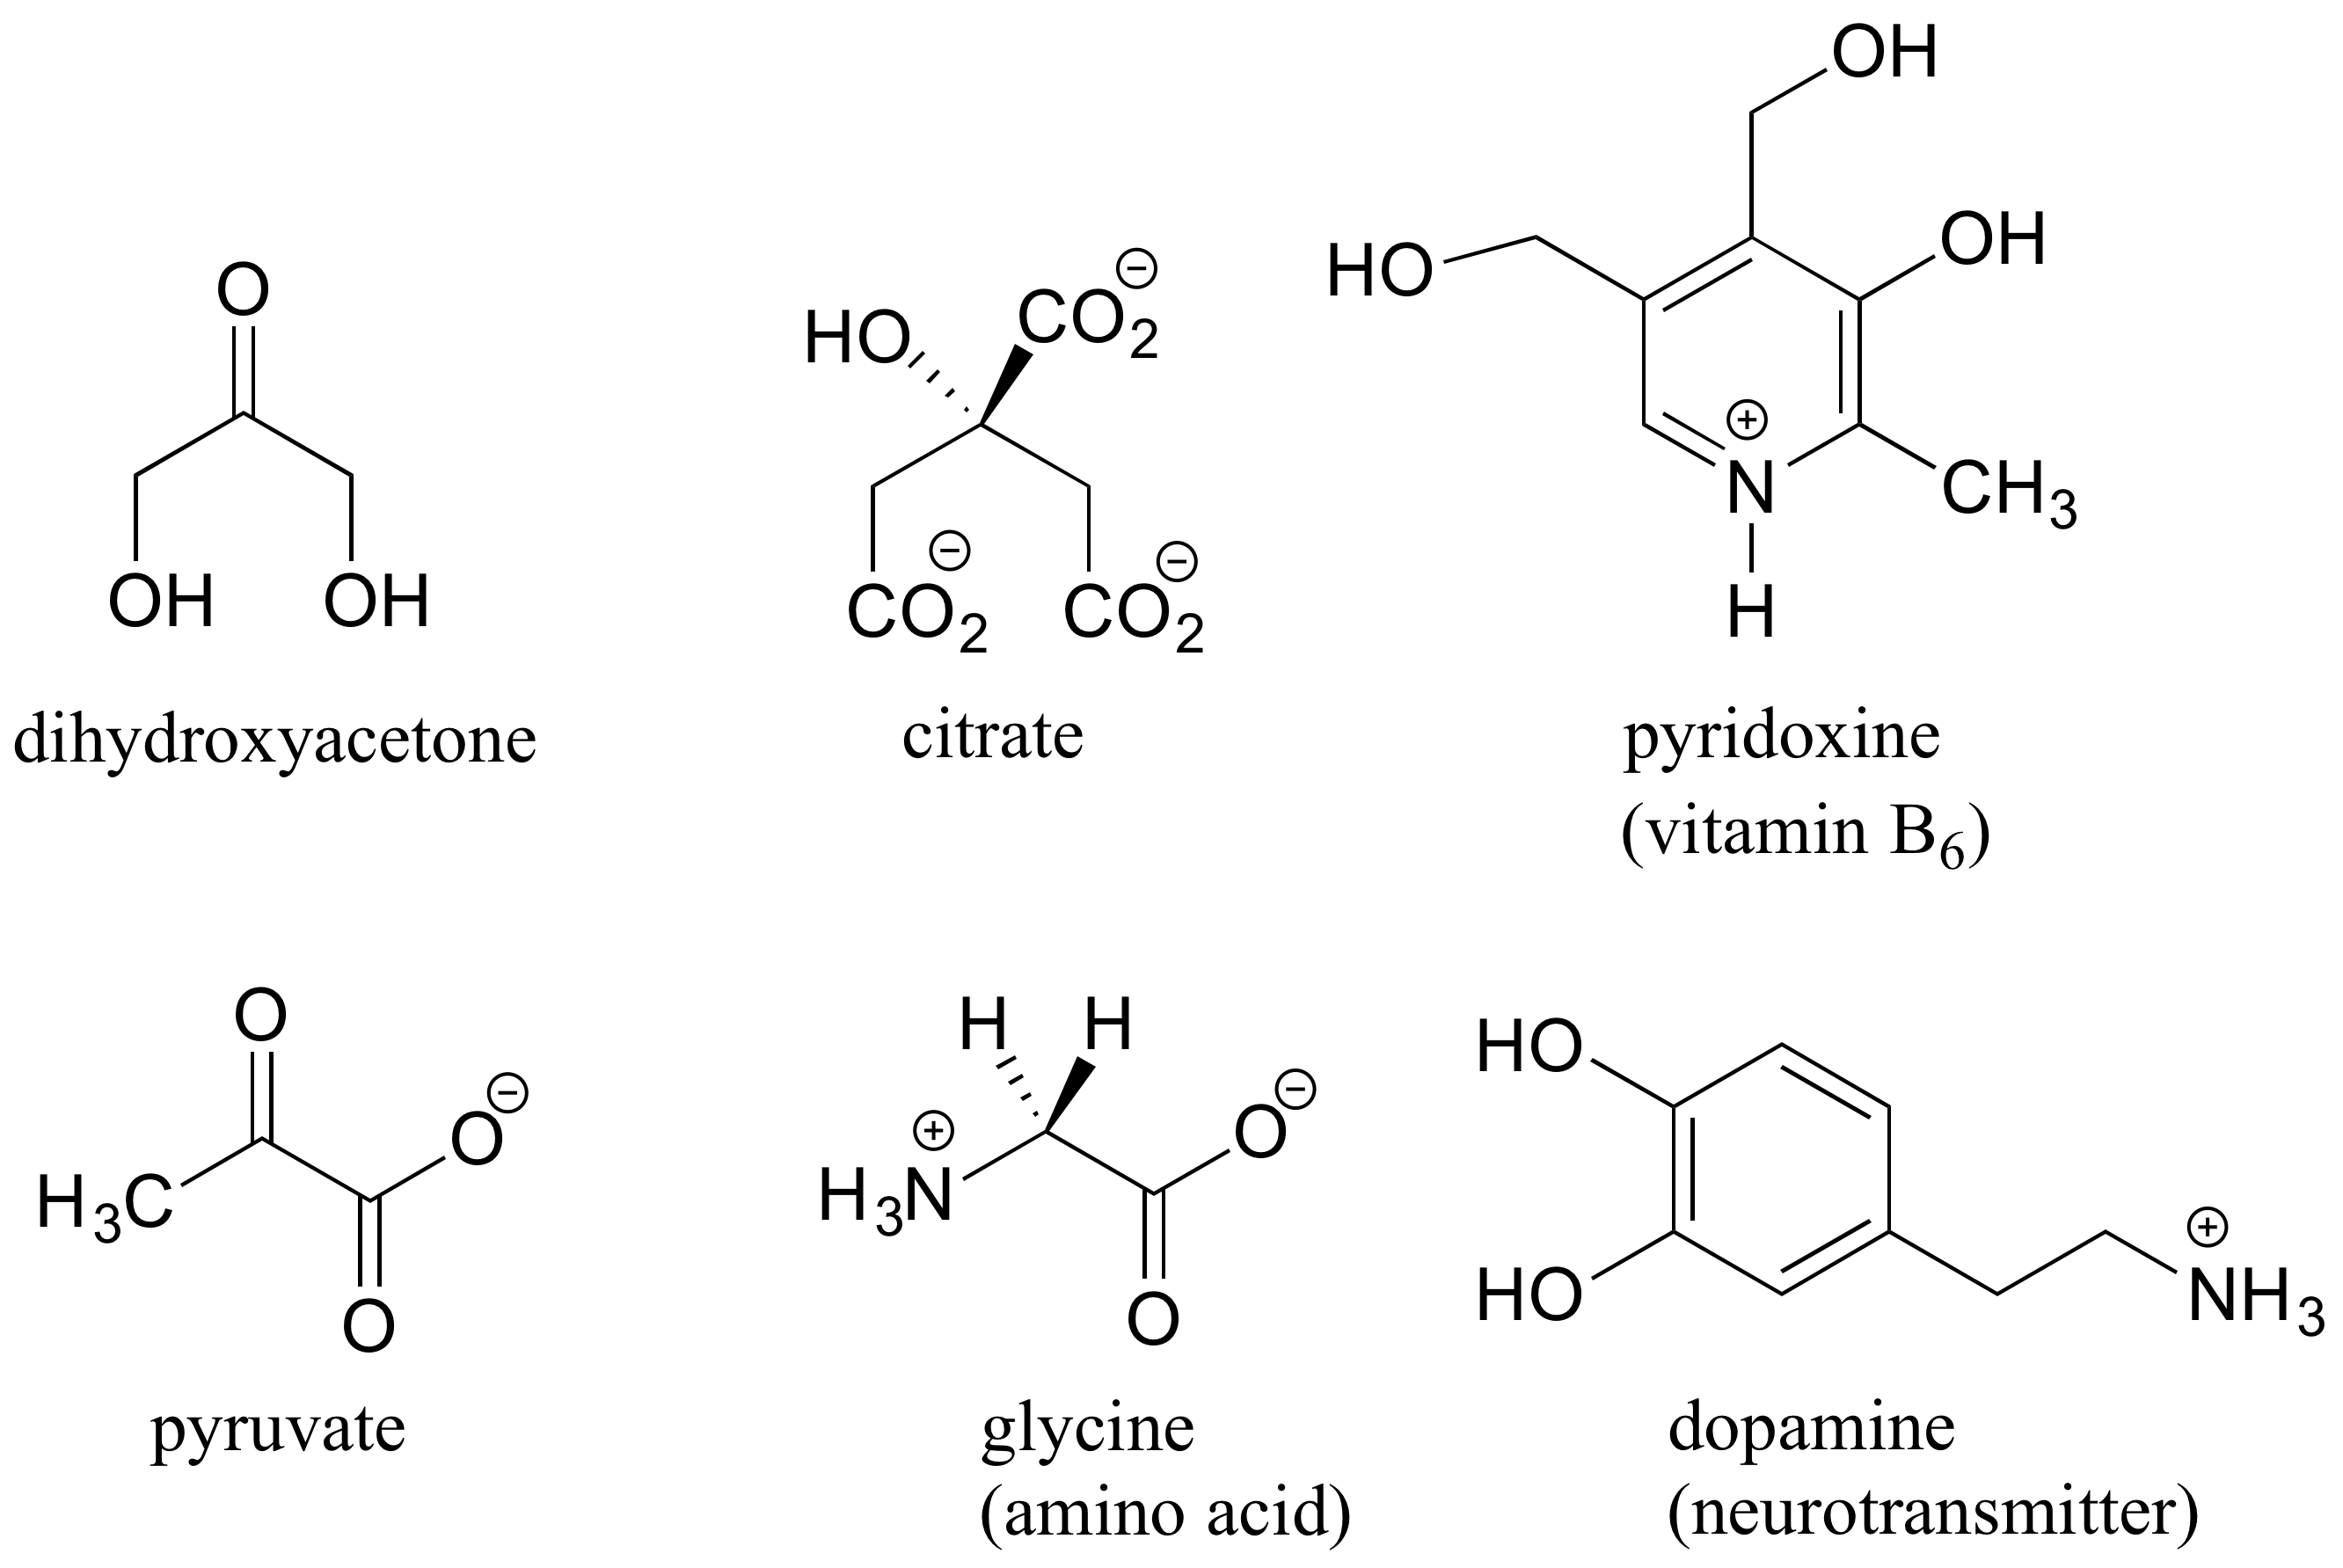 Arriba: dihidroxiacetona, citrato y piridoxina (vitamina B 6). Abajo: piruvato, glicina (un aminoácido) y dopamina (neurotransmisor)